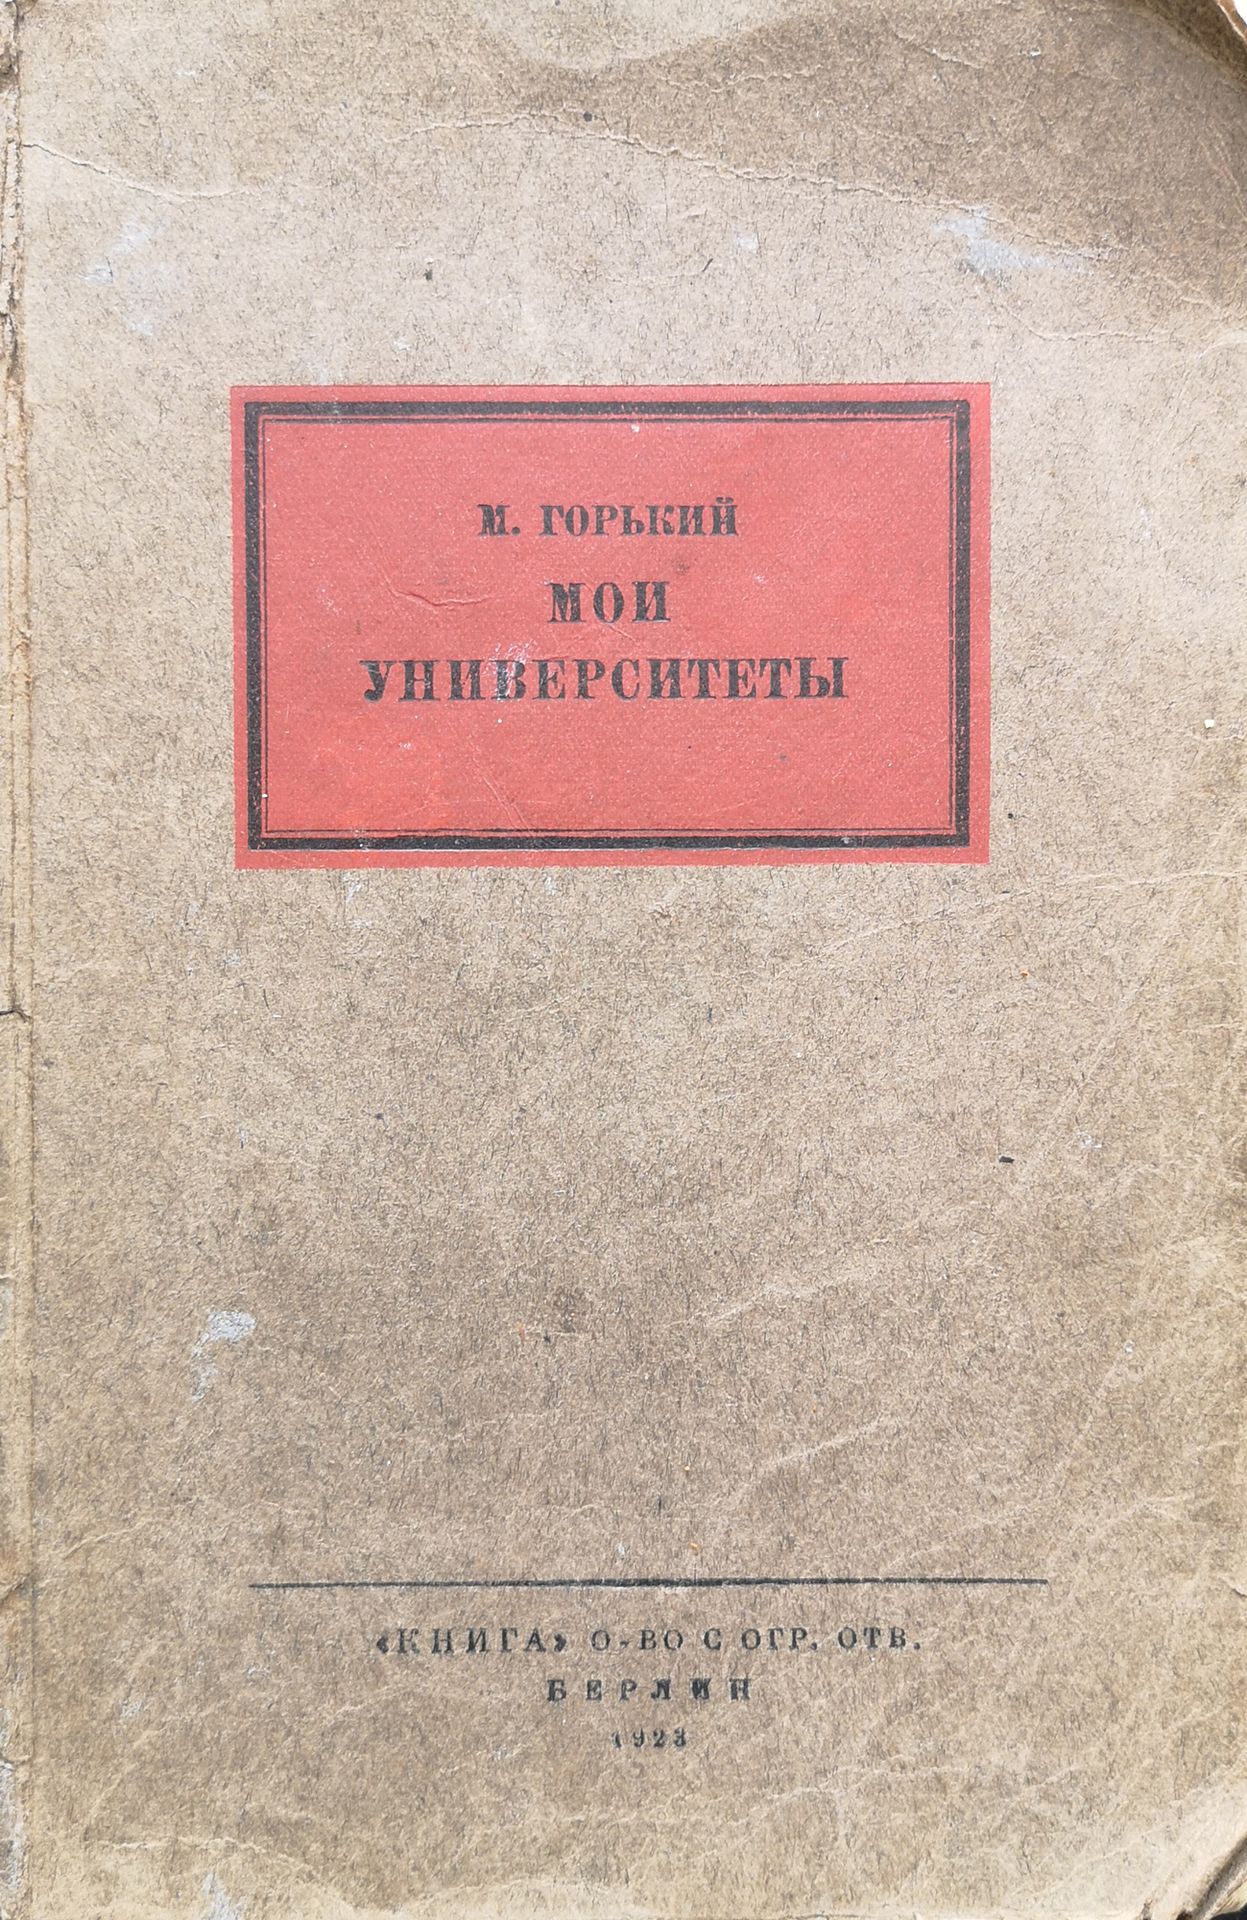 Null 包括3个版本的拍品。

高尔基-马克西姆（1868 -1936）。我的大学。克尼加，柏林。1923年，235页，8开本；现代诗歌。SVERBEEVA &hellip;